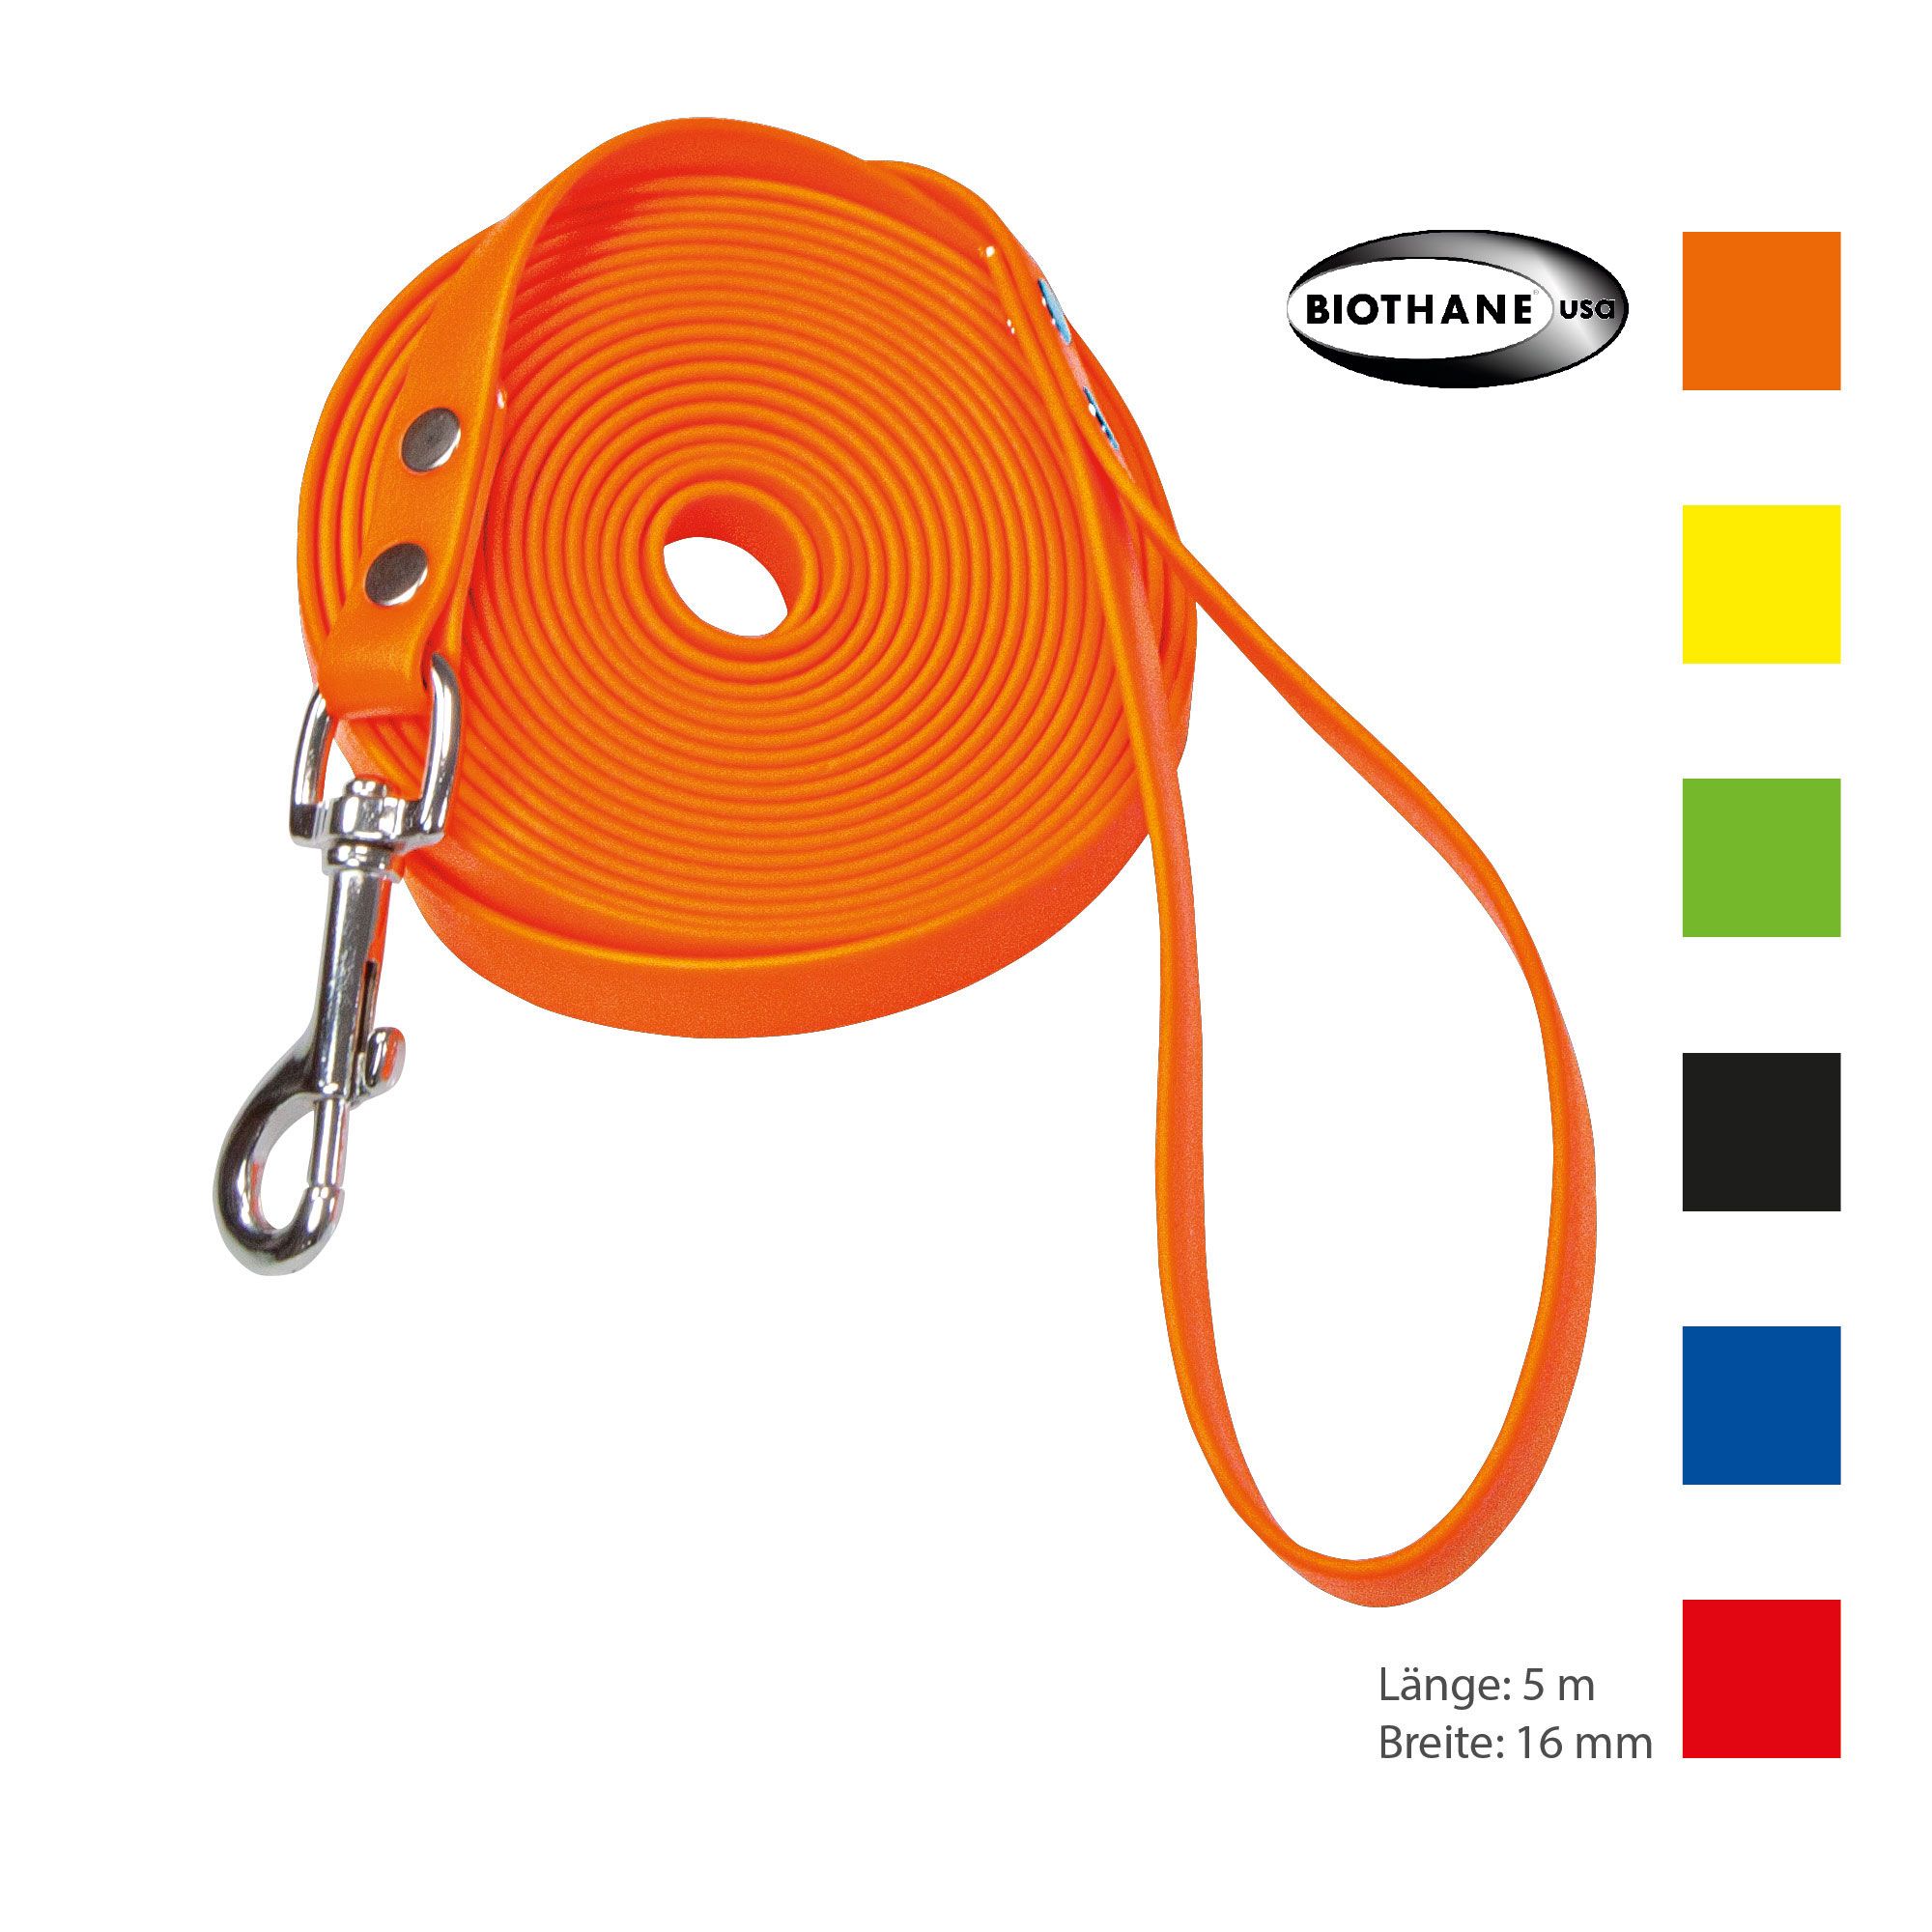 Schecker orange Biothane® Schleppleine mit Handschlaufe - 5 m/16mm - widerstandsfähig